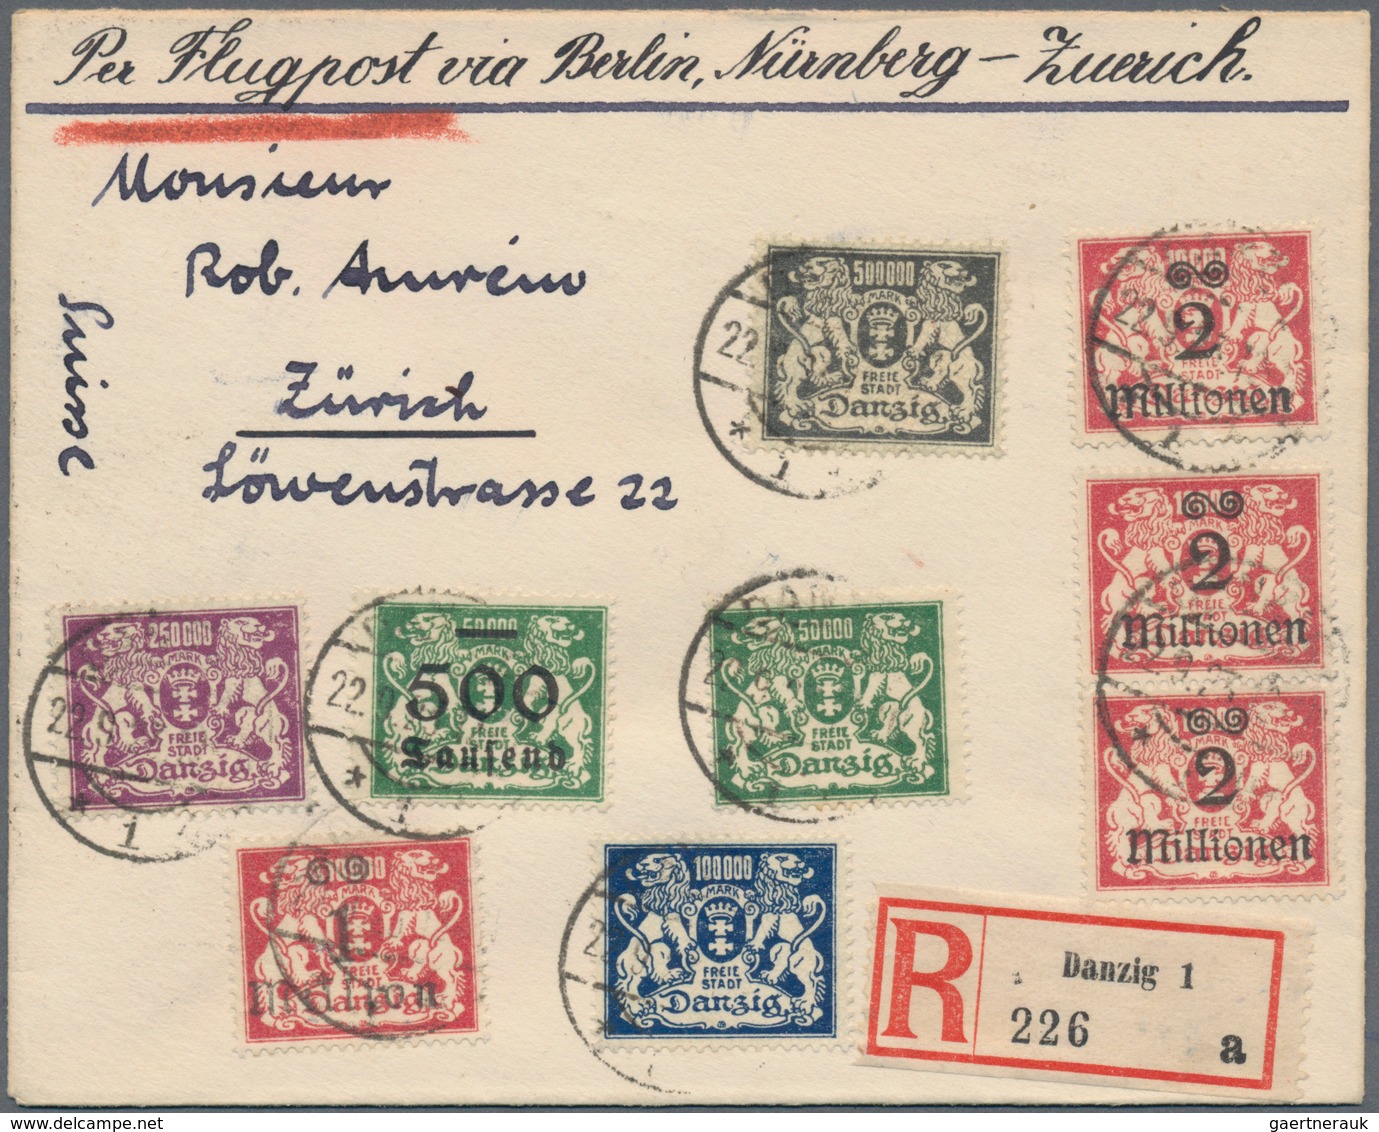 Danzig: 1898/1939 (ca.), interessanter Posten von über 70 Belegen, dabei seltene Frankaturen, R-, Ex